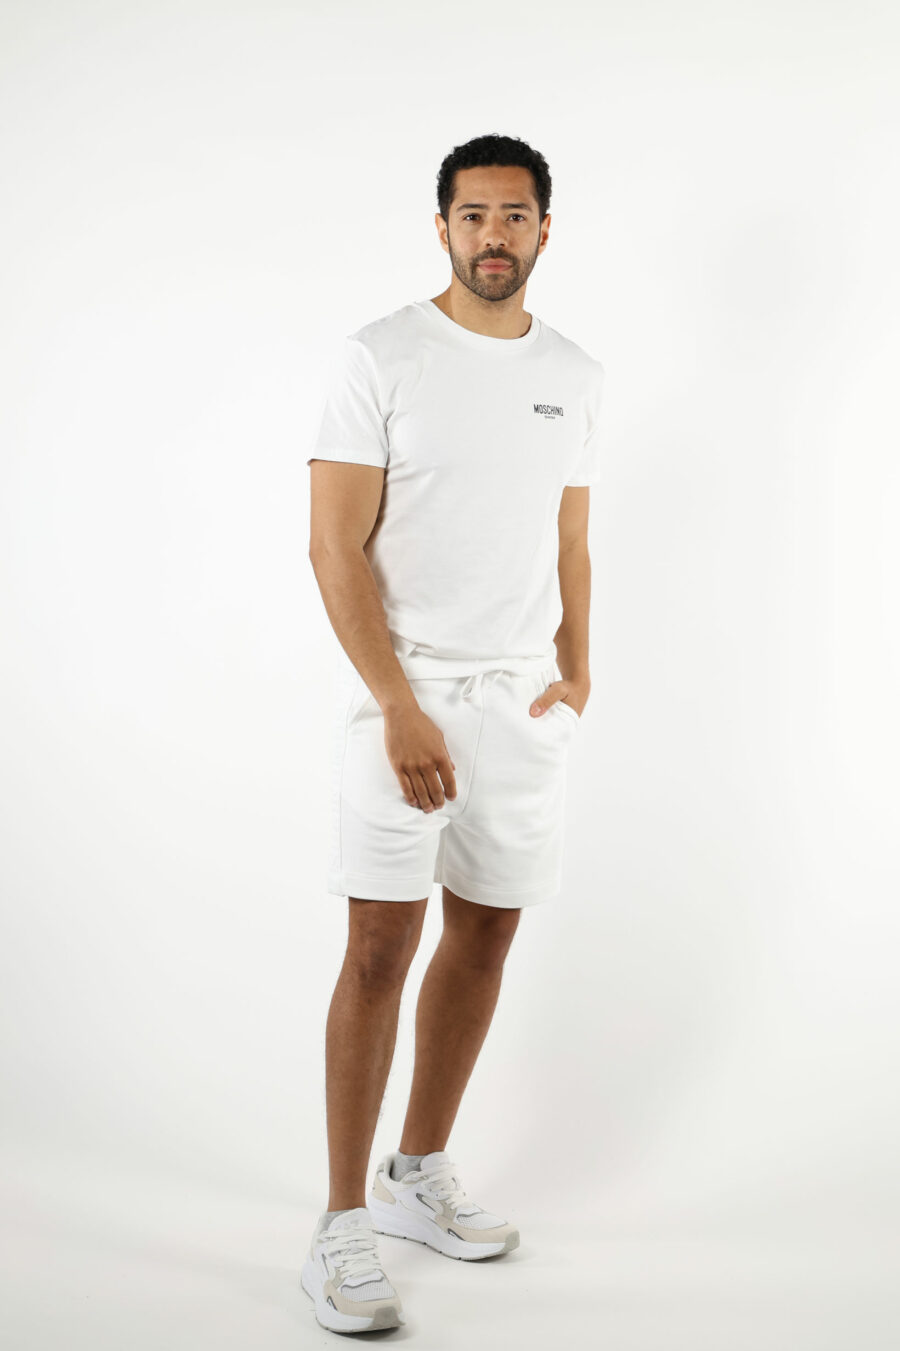 T-shirt branca com minilogo "swim" - 111085